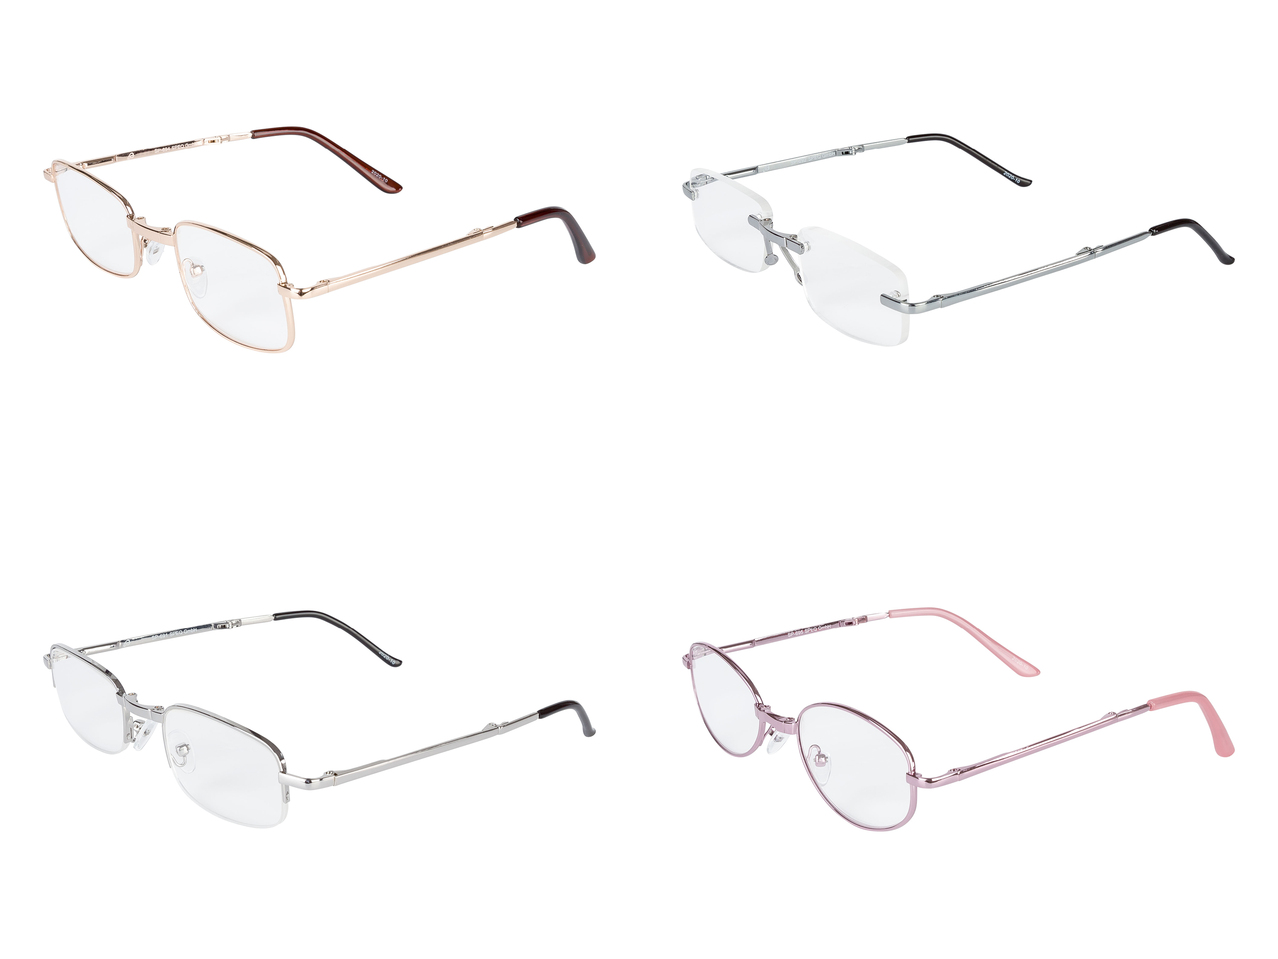 Składane okulary do czytania w etui , cena 2,5 PLN 
Składane okulary do czytania ...